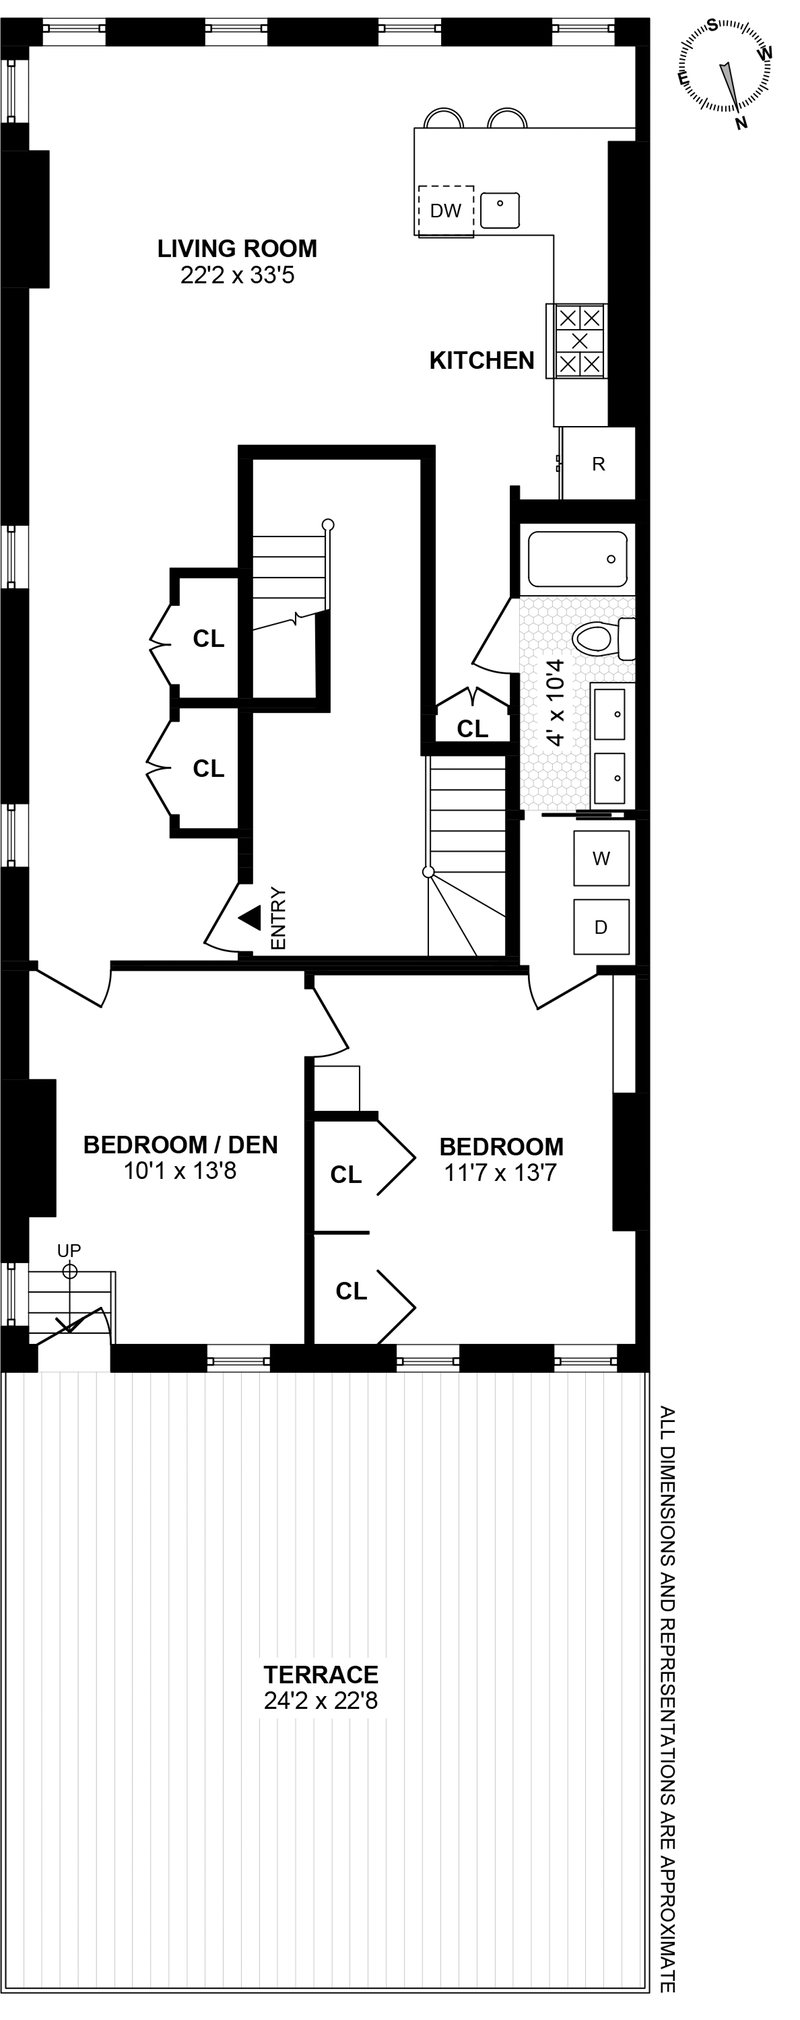 Floorplan for 150 Newark St, 1